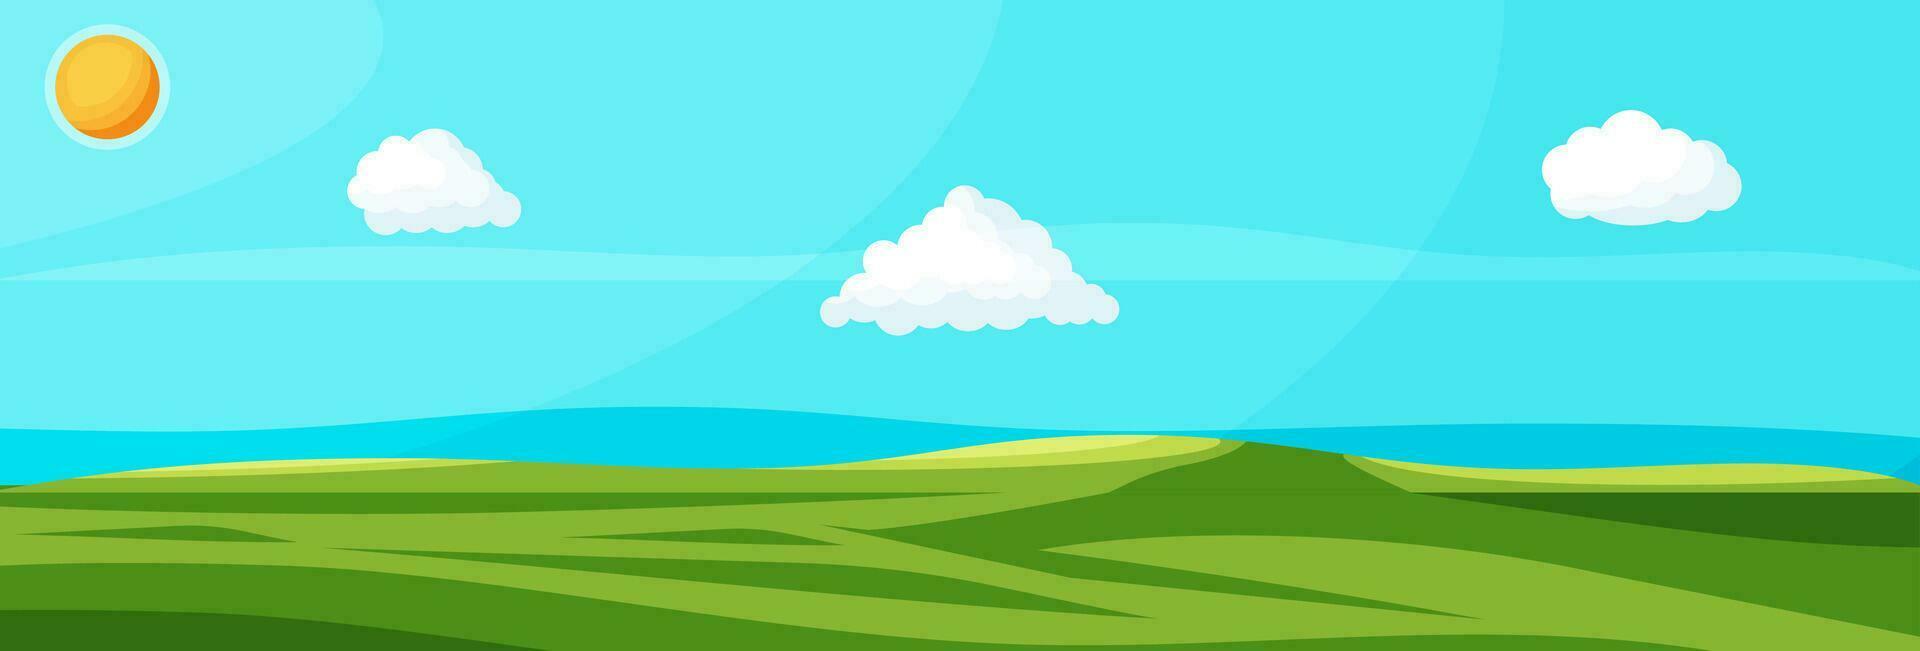 tömma grön landskap med blå himmel, moln och Sol. grön äng med gräs. solig gläntor med fält gräs. natur och frihet. nationell parkera eller natur boka. vektor illustration i platt stil